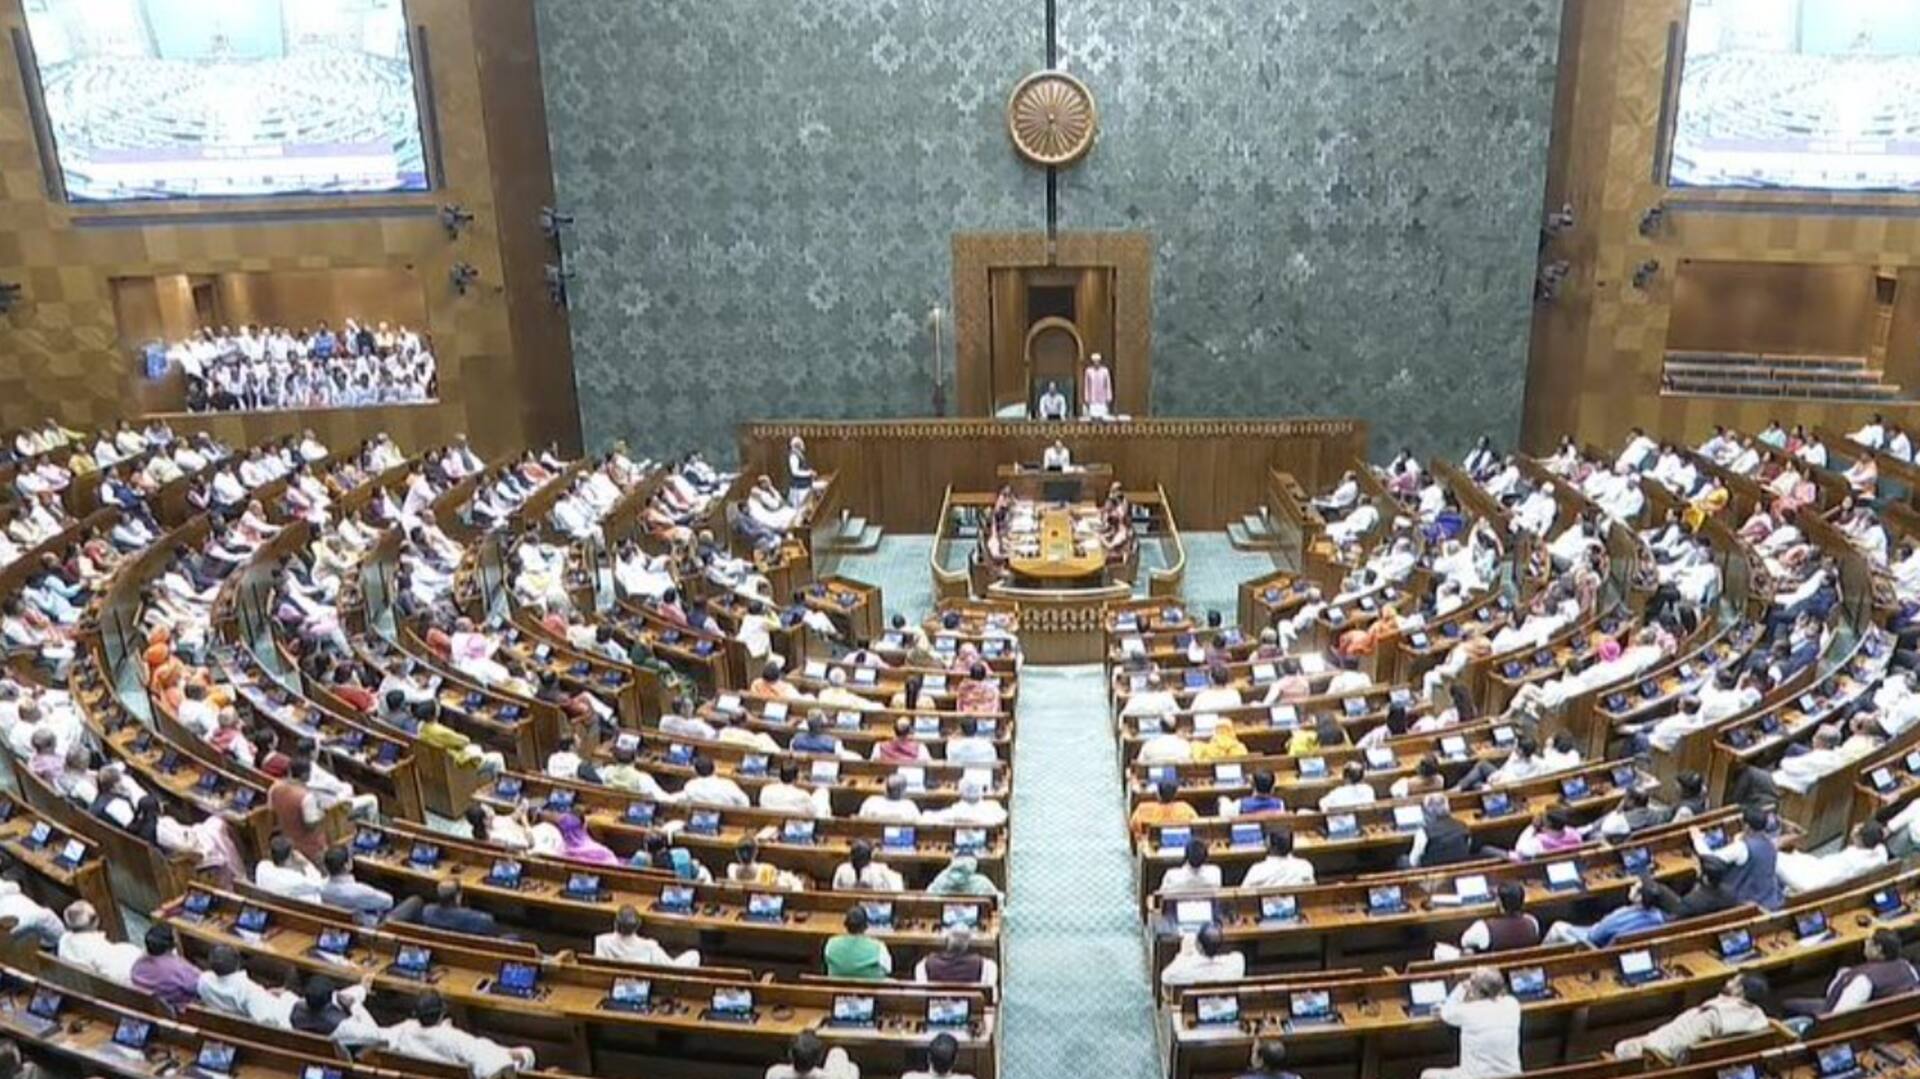 MPs suspended: లోక్‌సభ నుంచి మరో ముగ్గురు ఎంపీలు సస్పెండ్.. 146కు చేరిన సంఖ్య 